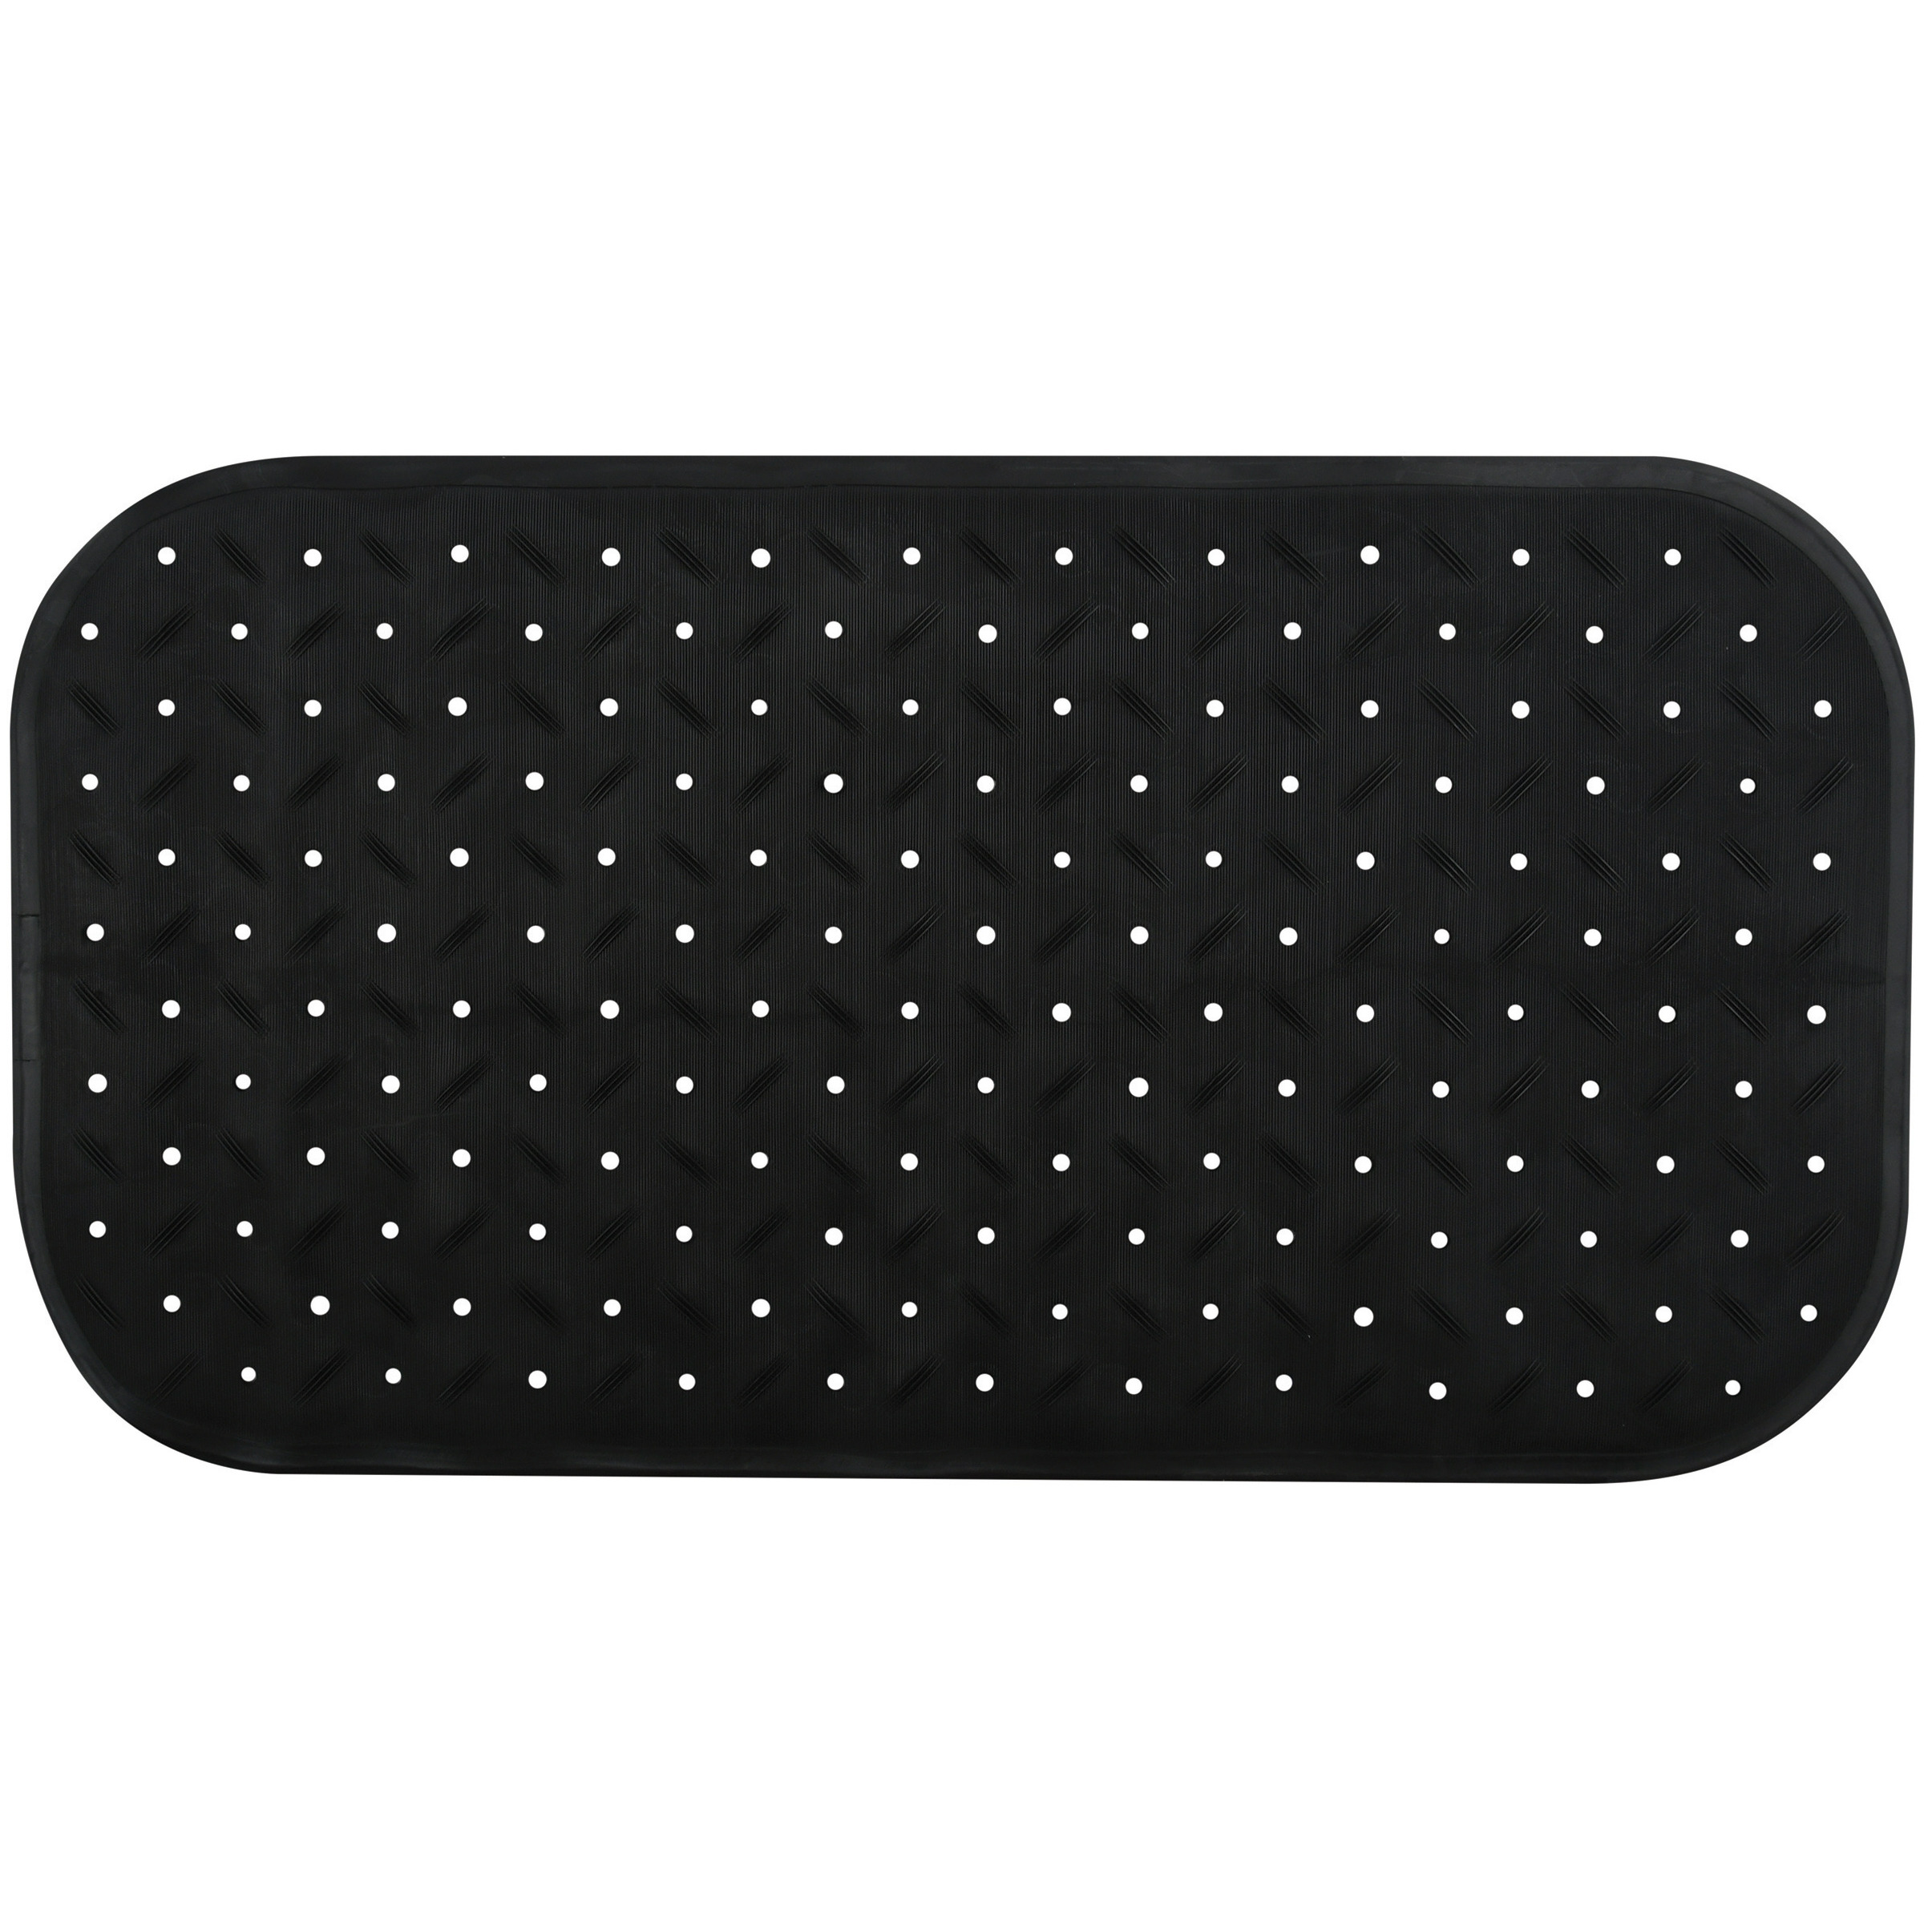 Douche-bad anti-slip mat badkamer rubber zwart 36 x 65 cm rechthoek